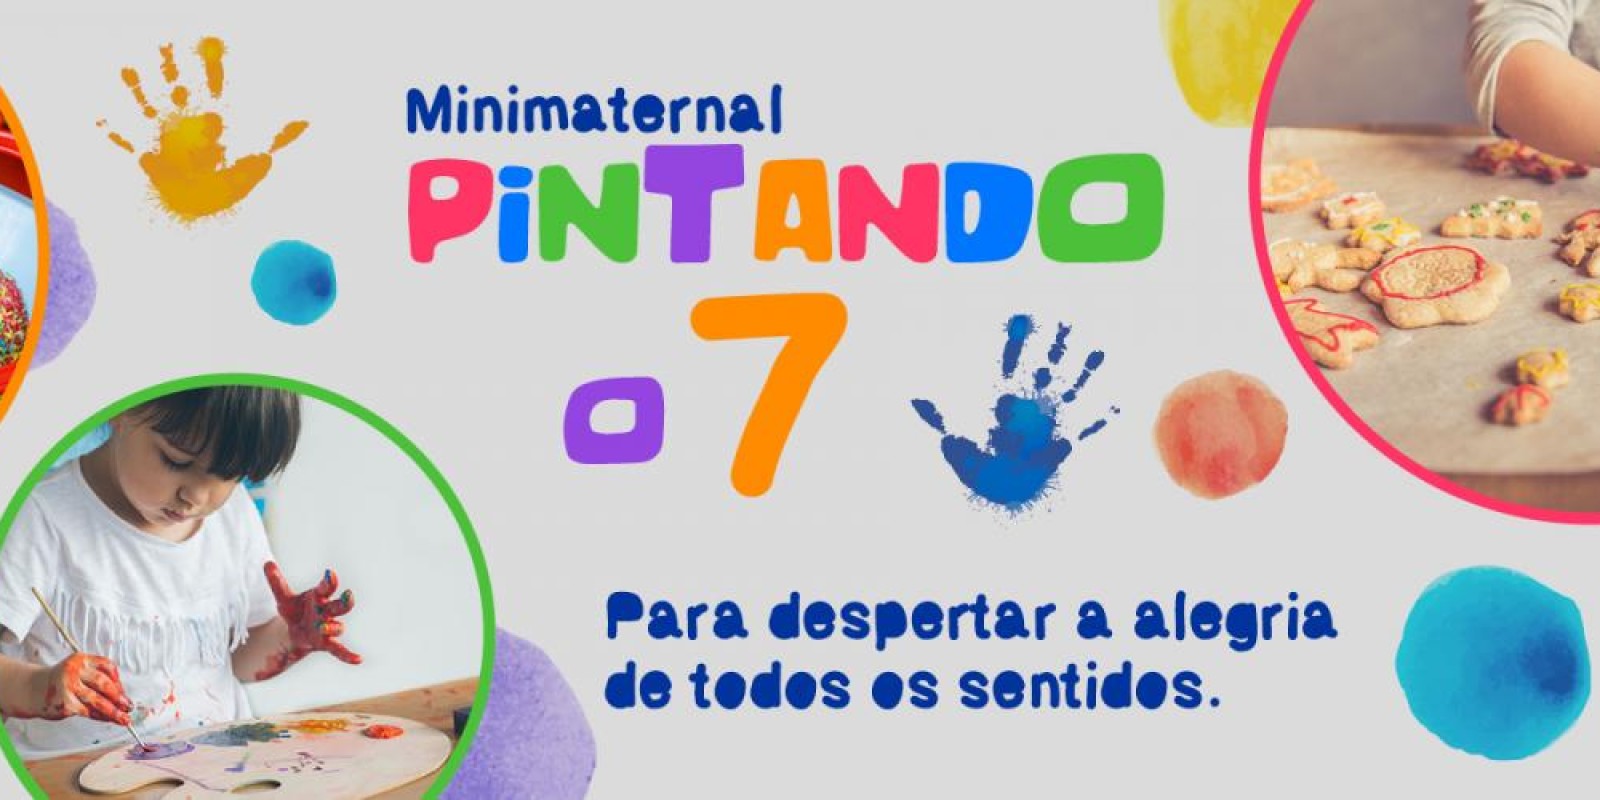 Projeto sensorial, “PINTANDO O 7” – Desenvolvendo diferentes atividades educativas com a turma do Minimaternal